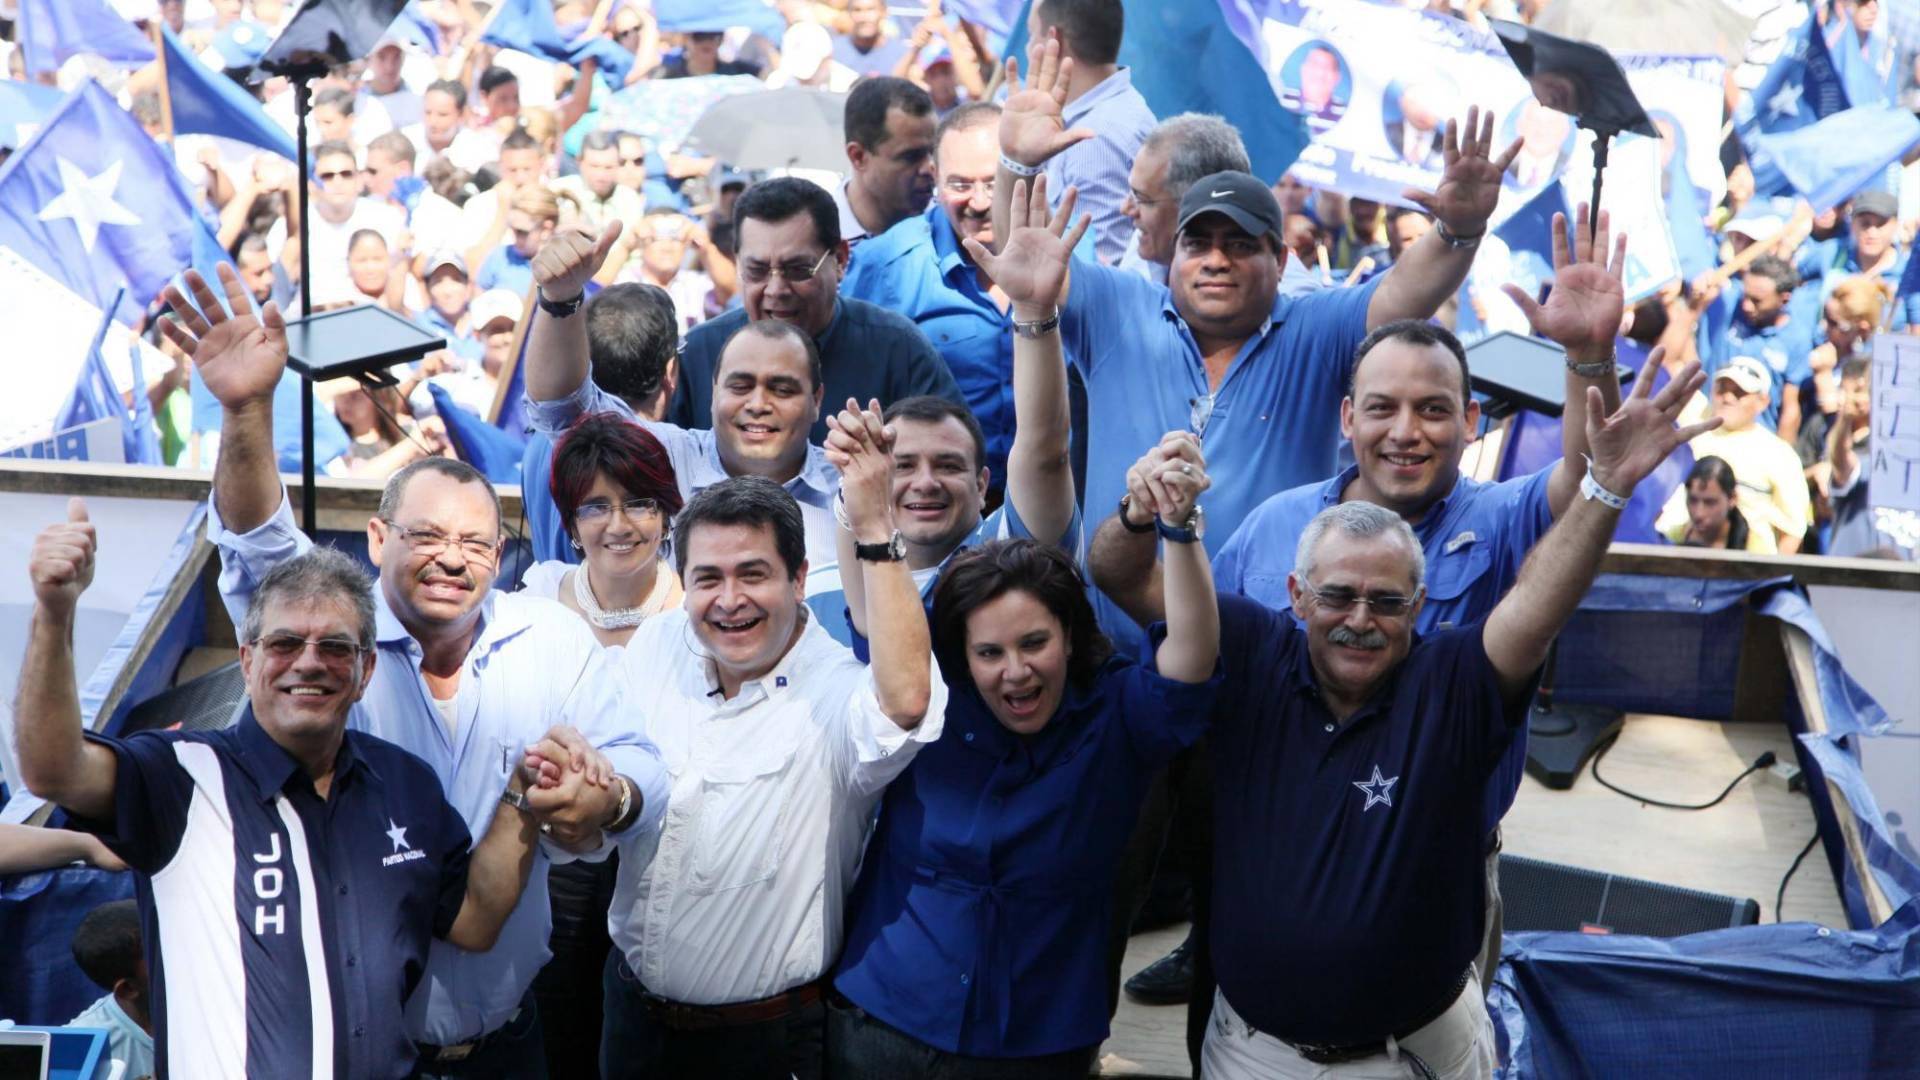 $!Analistas consideraron que el juicio de Hernández perjudica la imagen del Partido Nacional, pues fue uno de sus máximos dirigentes.